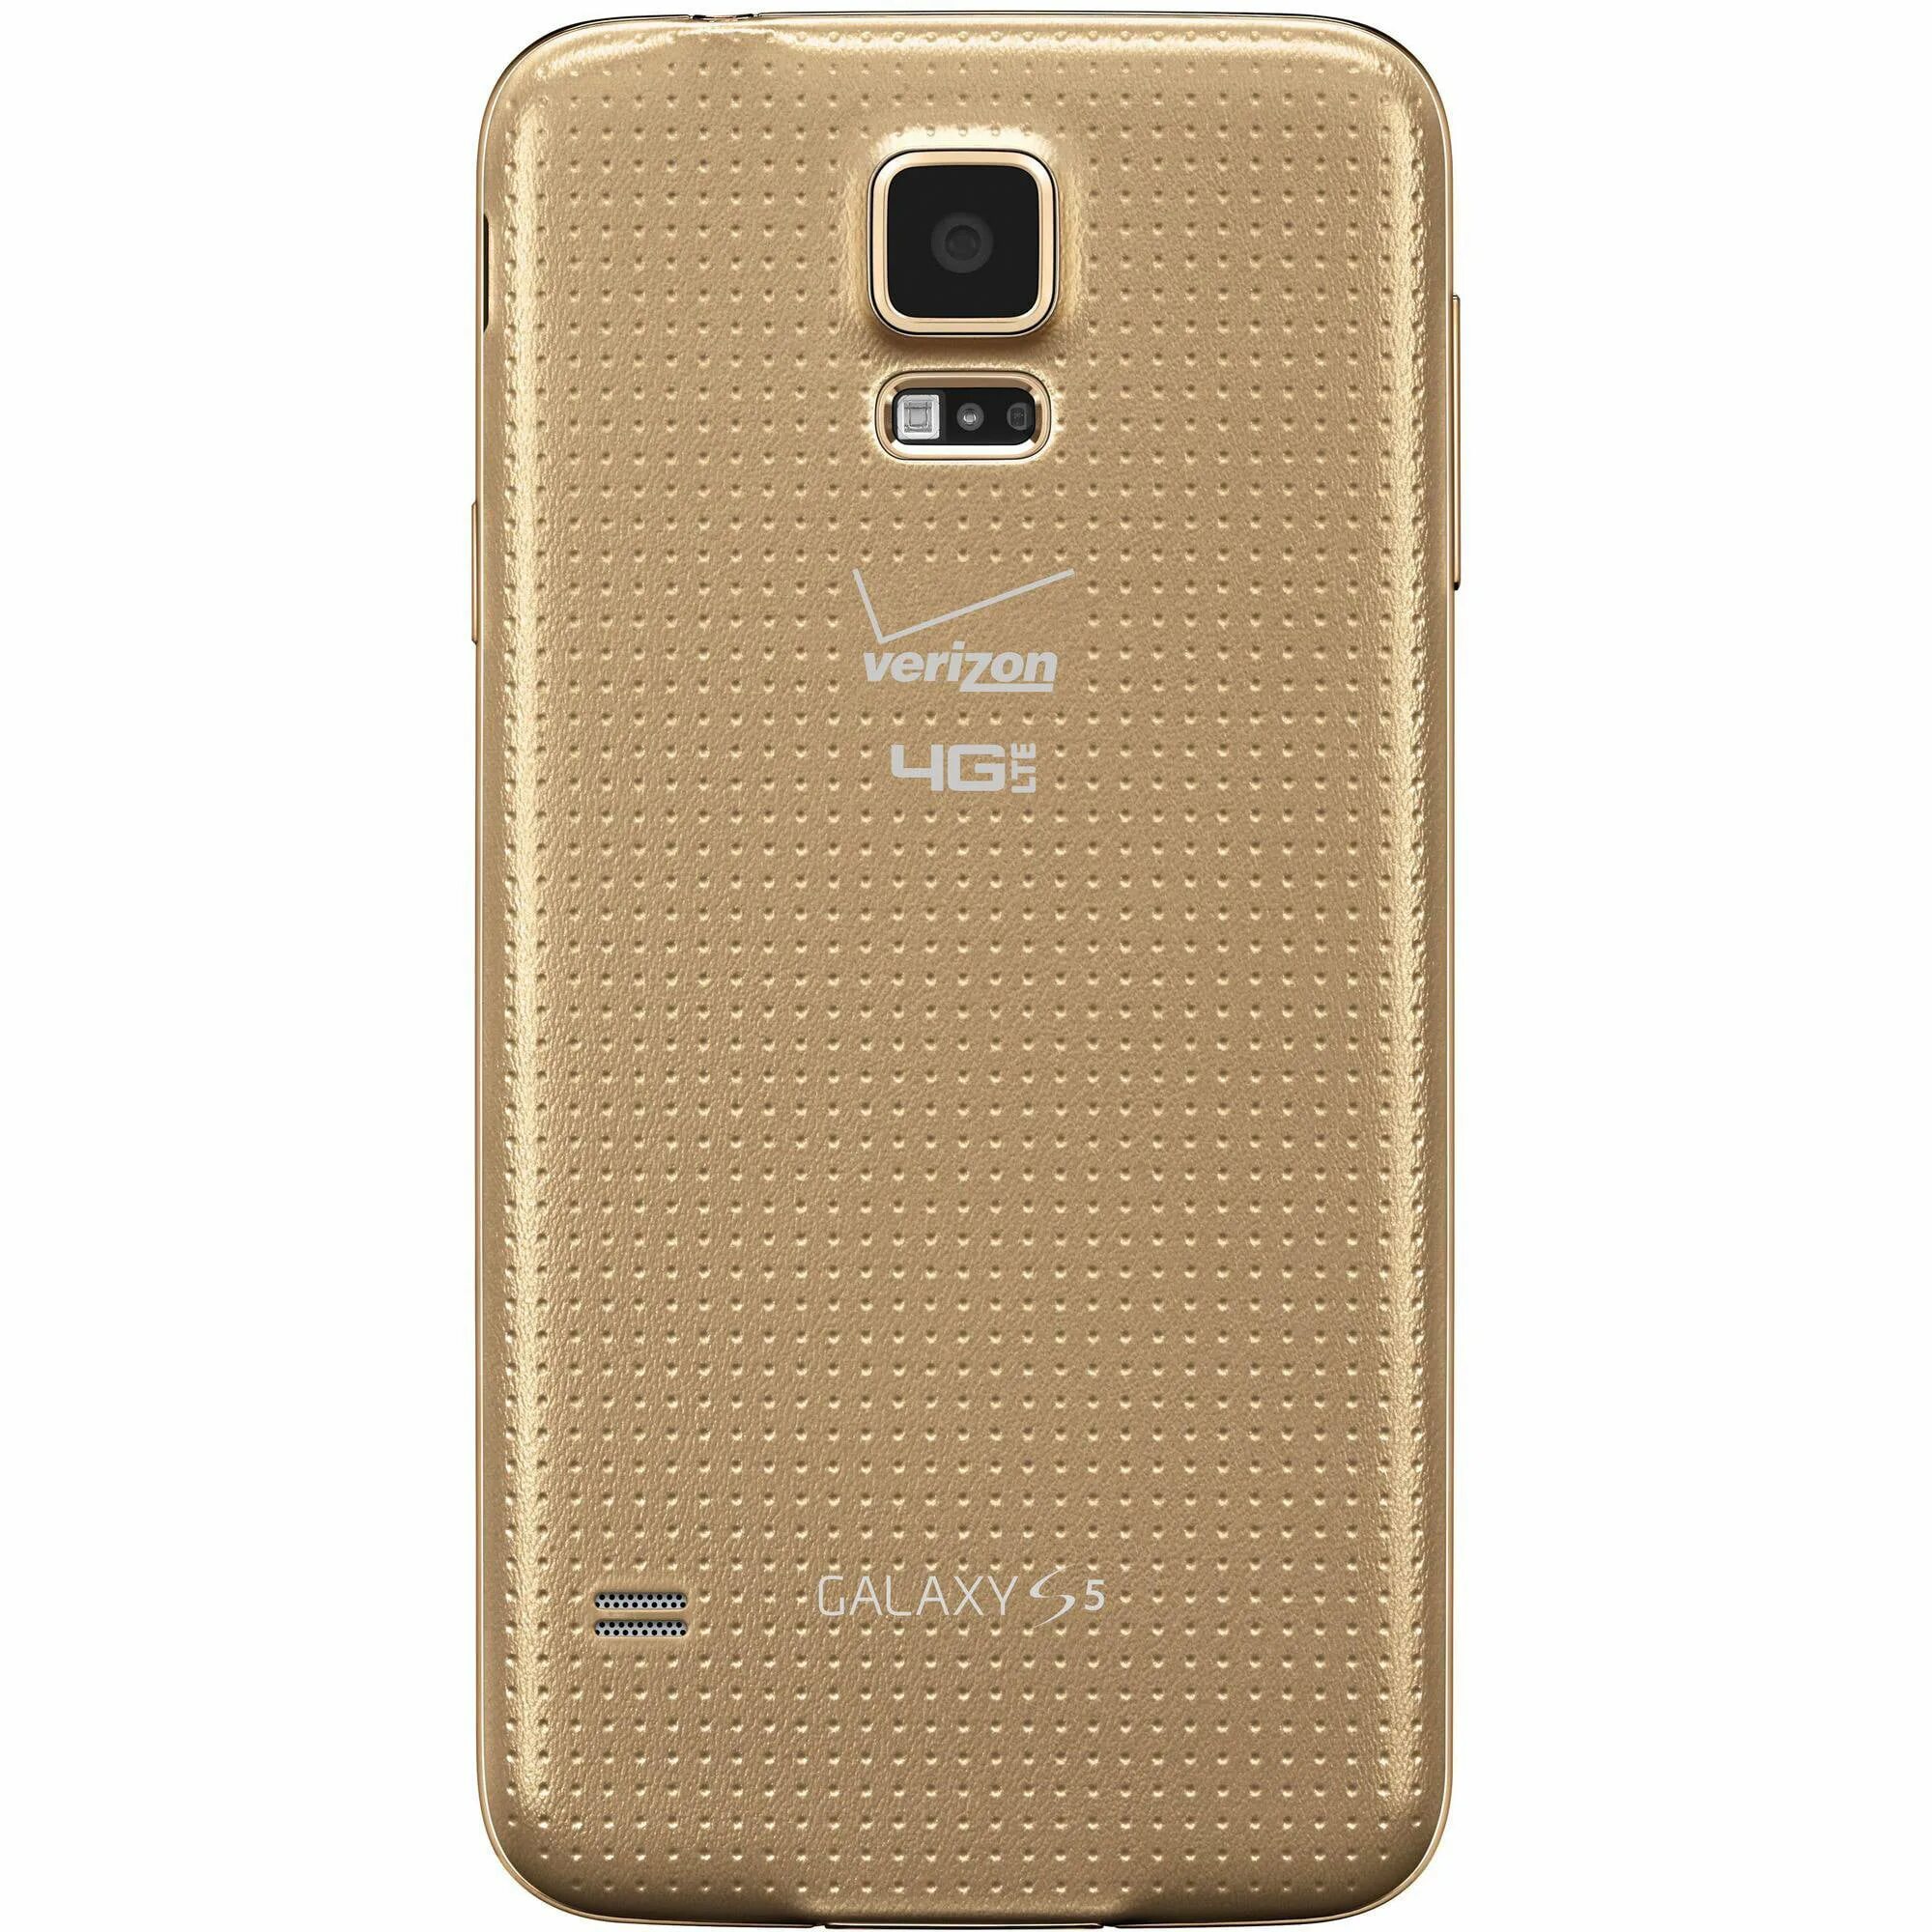 Samsung Galaxy s5. Samsung Galaxy s5 4g. Samsung Galaxy s5 Duos SM-g900fd. Samsung Galaxy s5 Plus. Samsung galaxy s5 sm